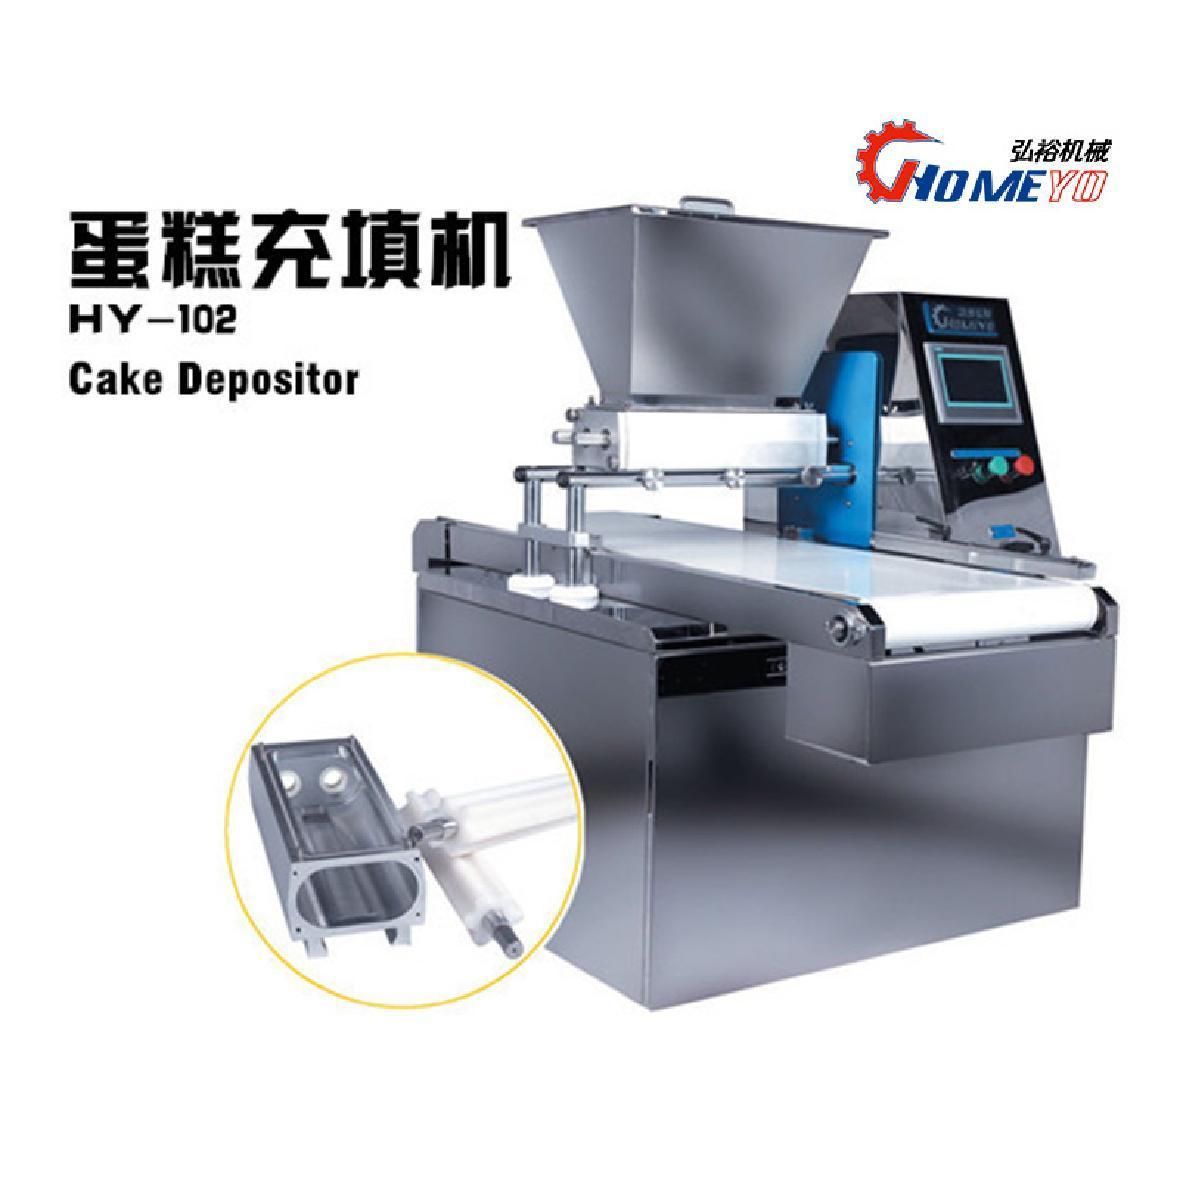 Type 400 Cake Depositor